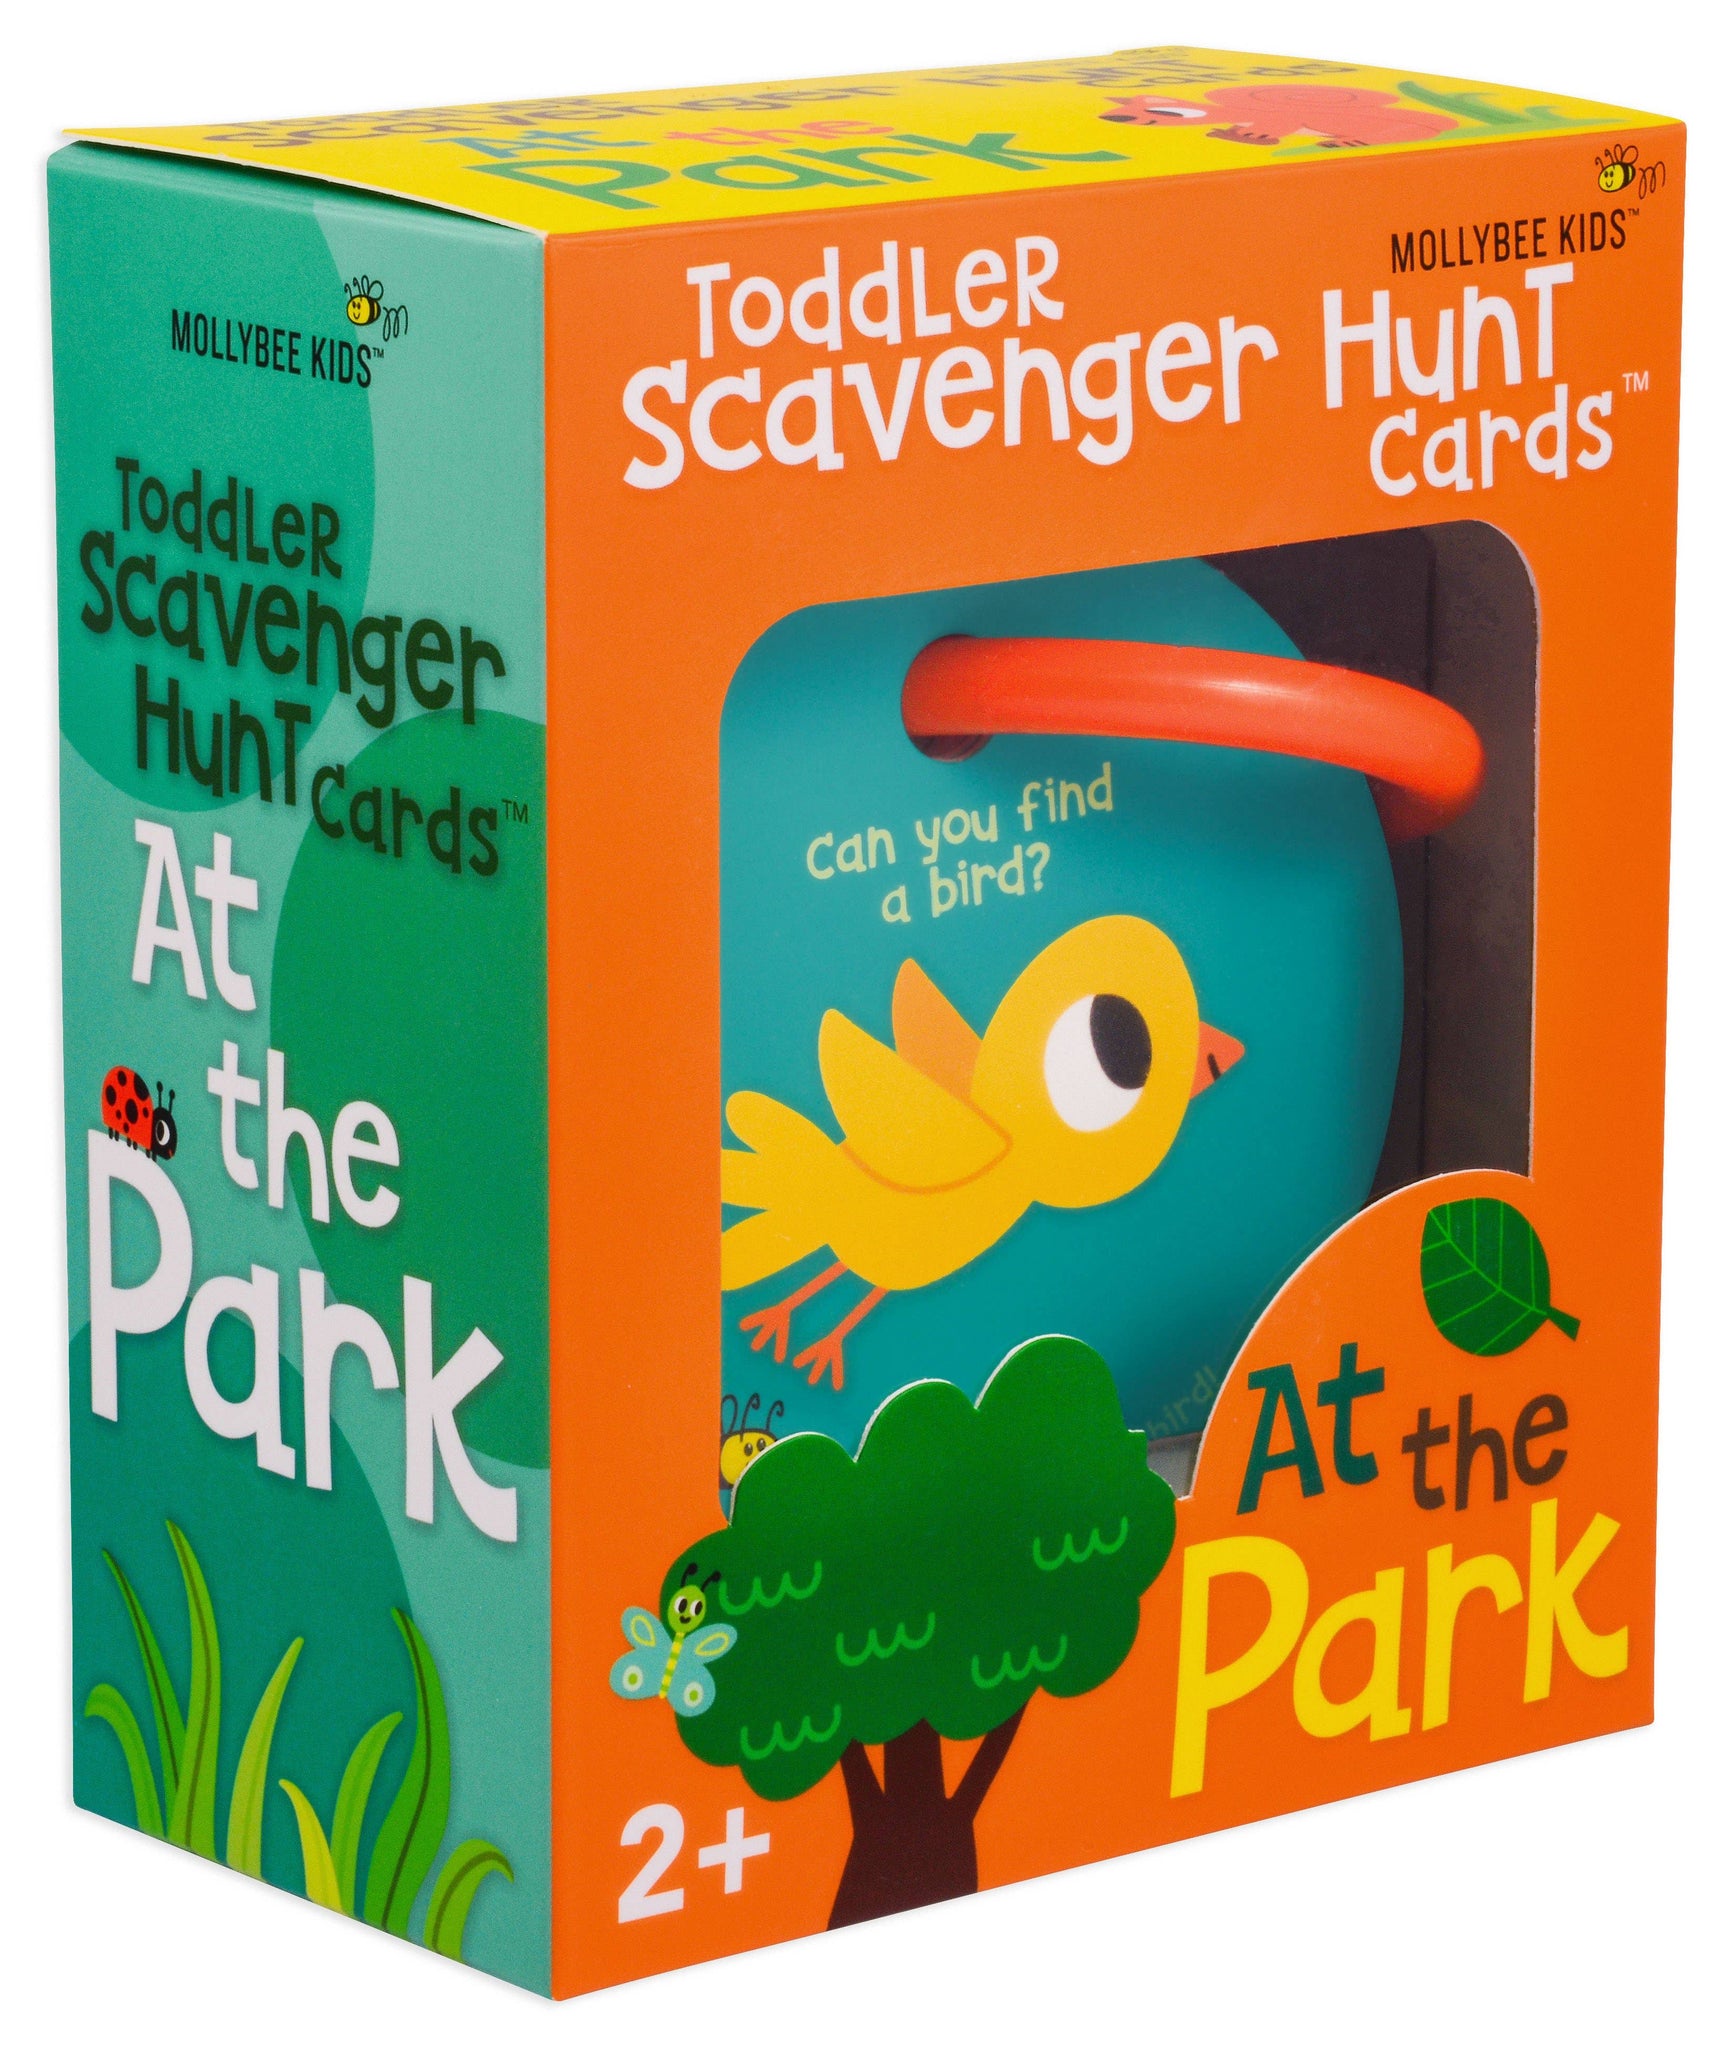 Toddler Scavenger Hunt Cards At the Park